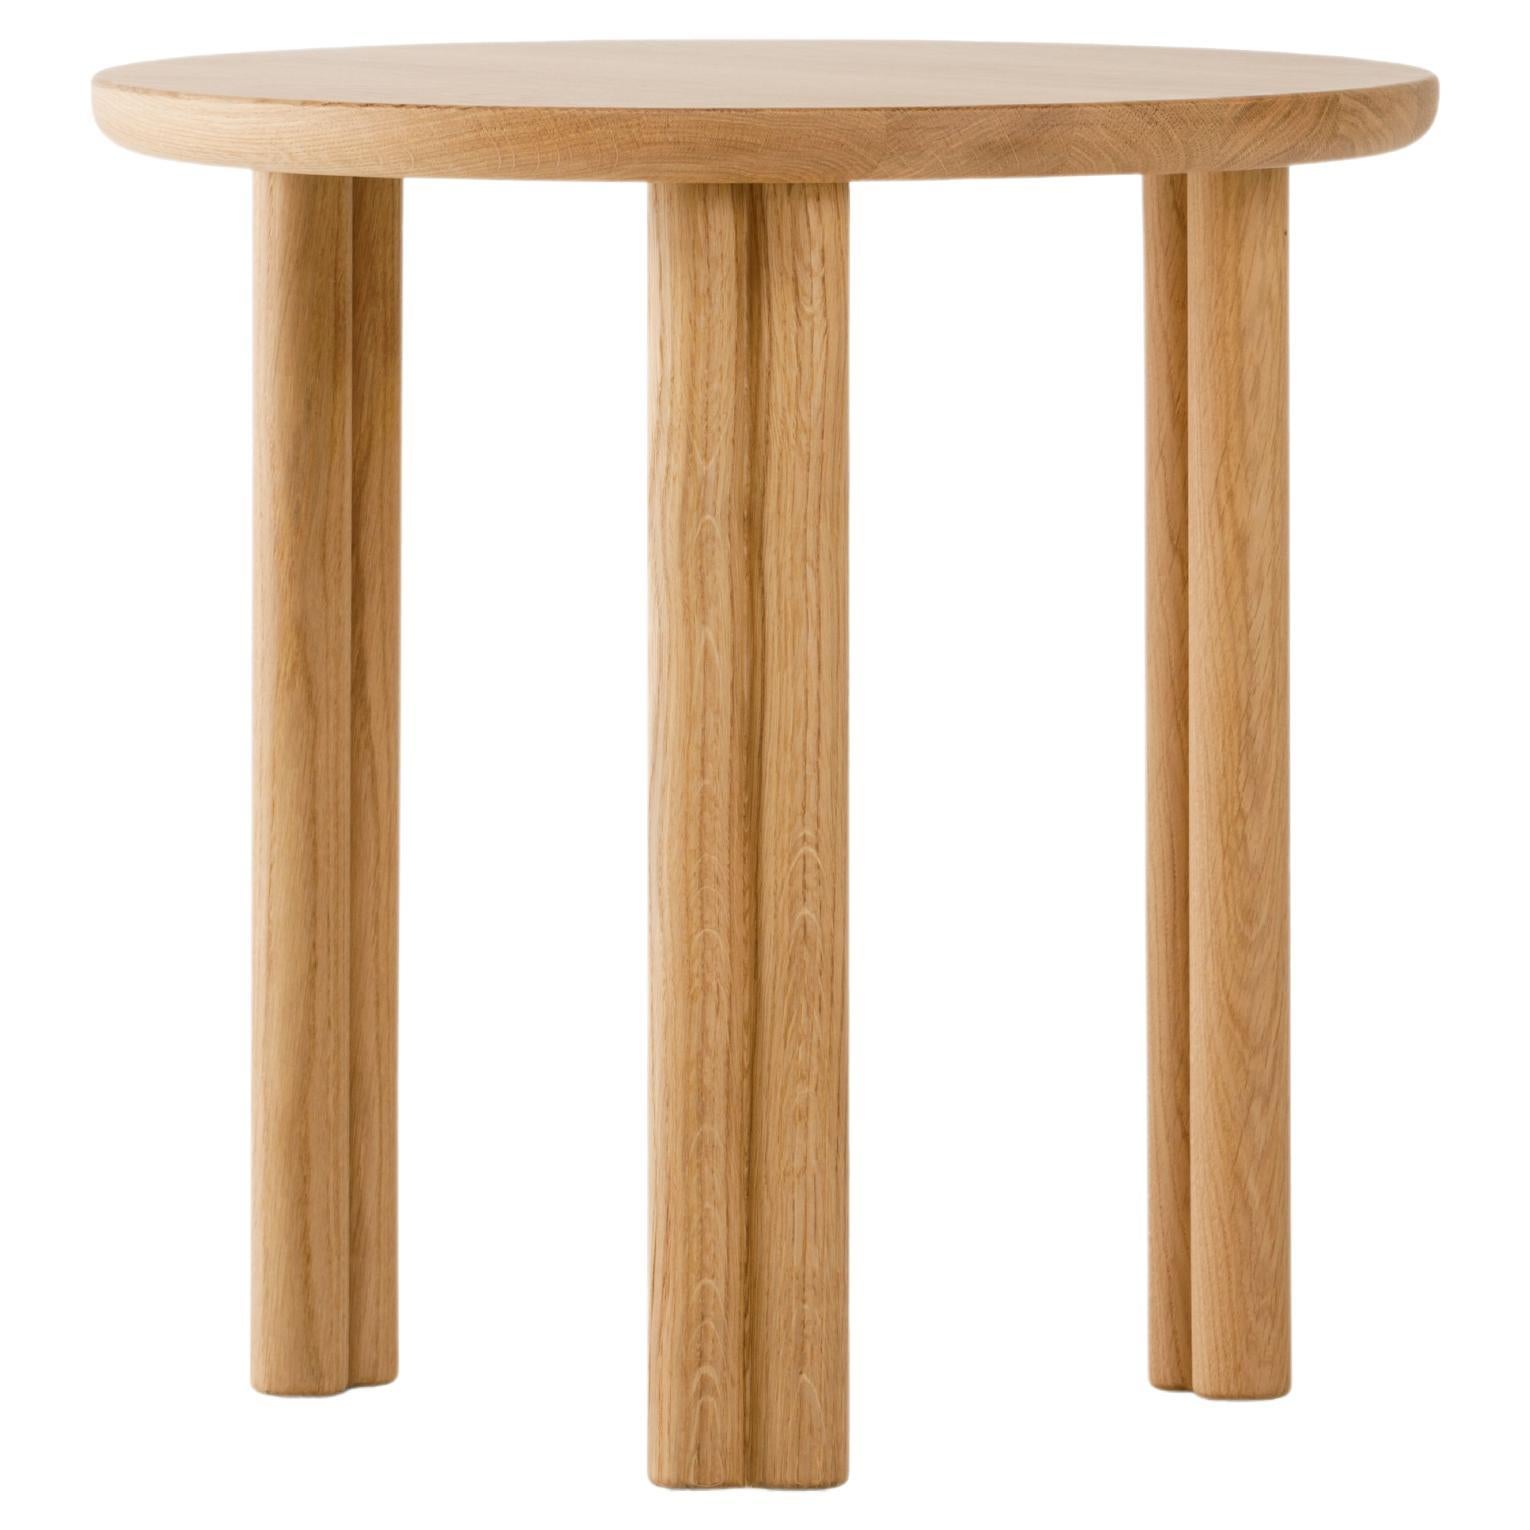 Table basse Silvestro en bois de chêne moderne du 21e siècle, fabriquée en Italie